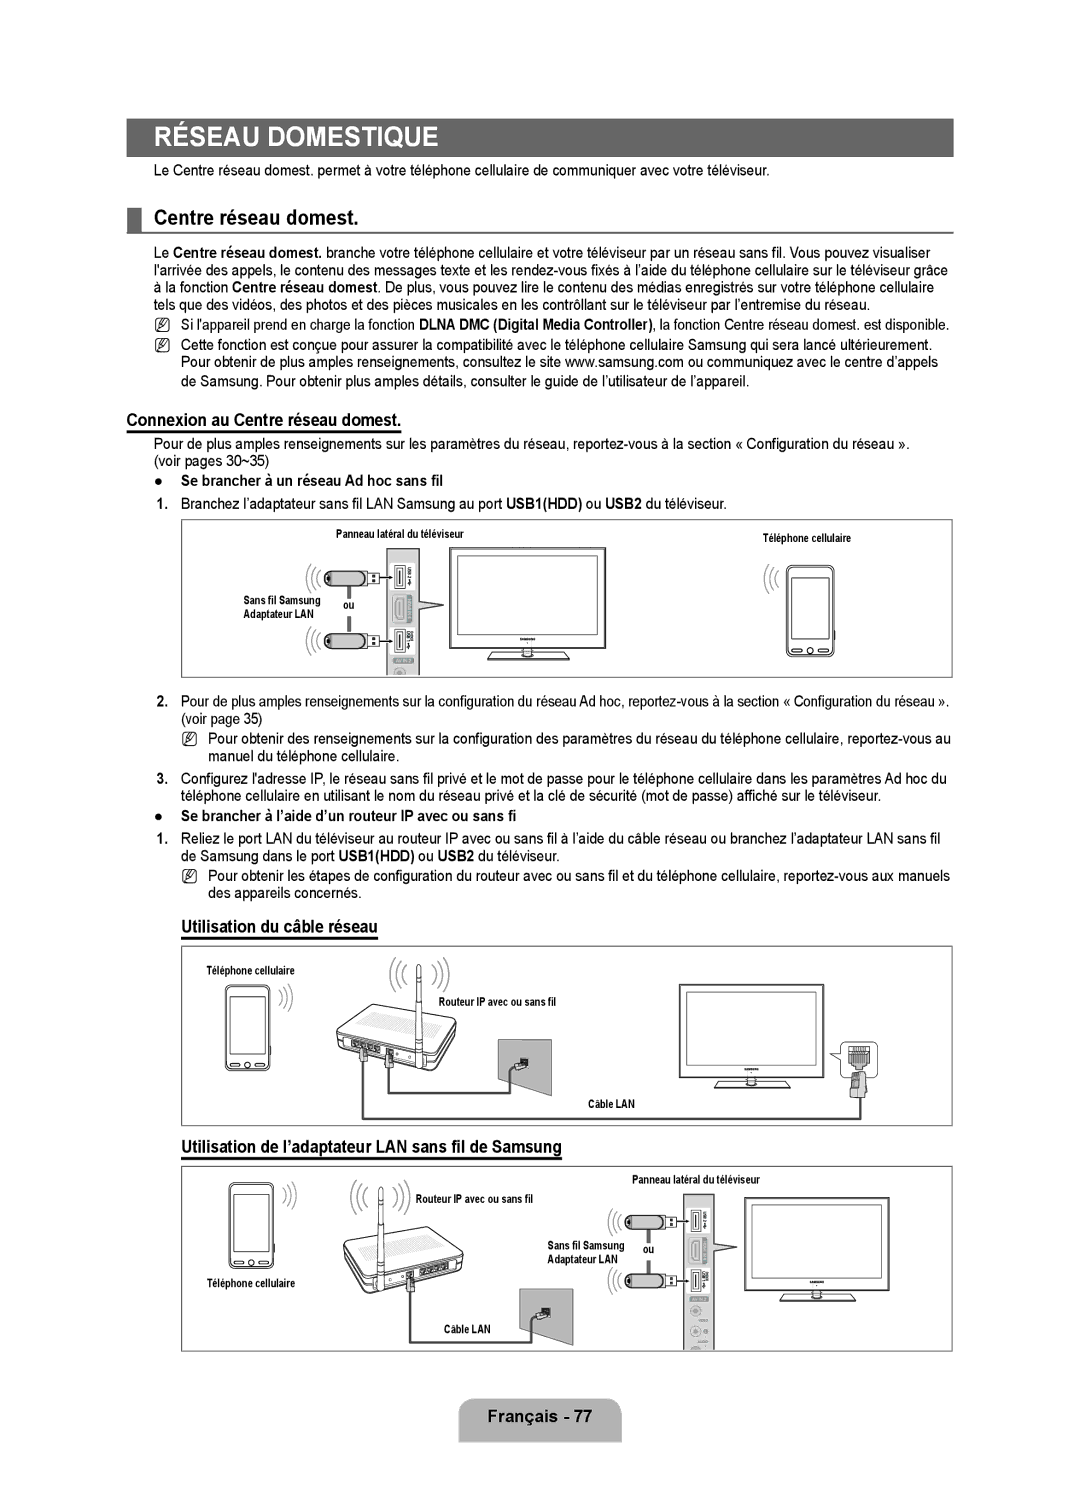 Samsung LN6B60 user manual Réseau domestique, Connexion au Centre réseau domest, Utilisation du câble réseau 